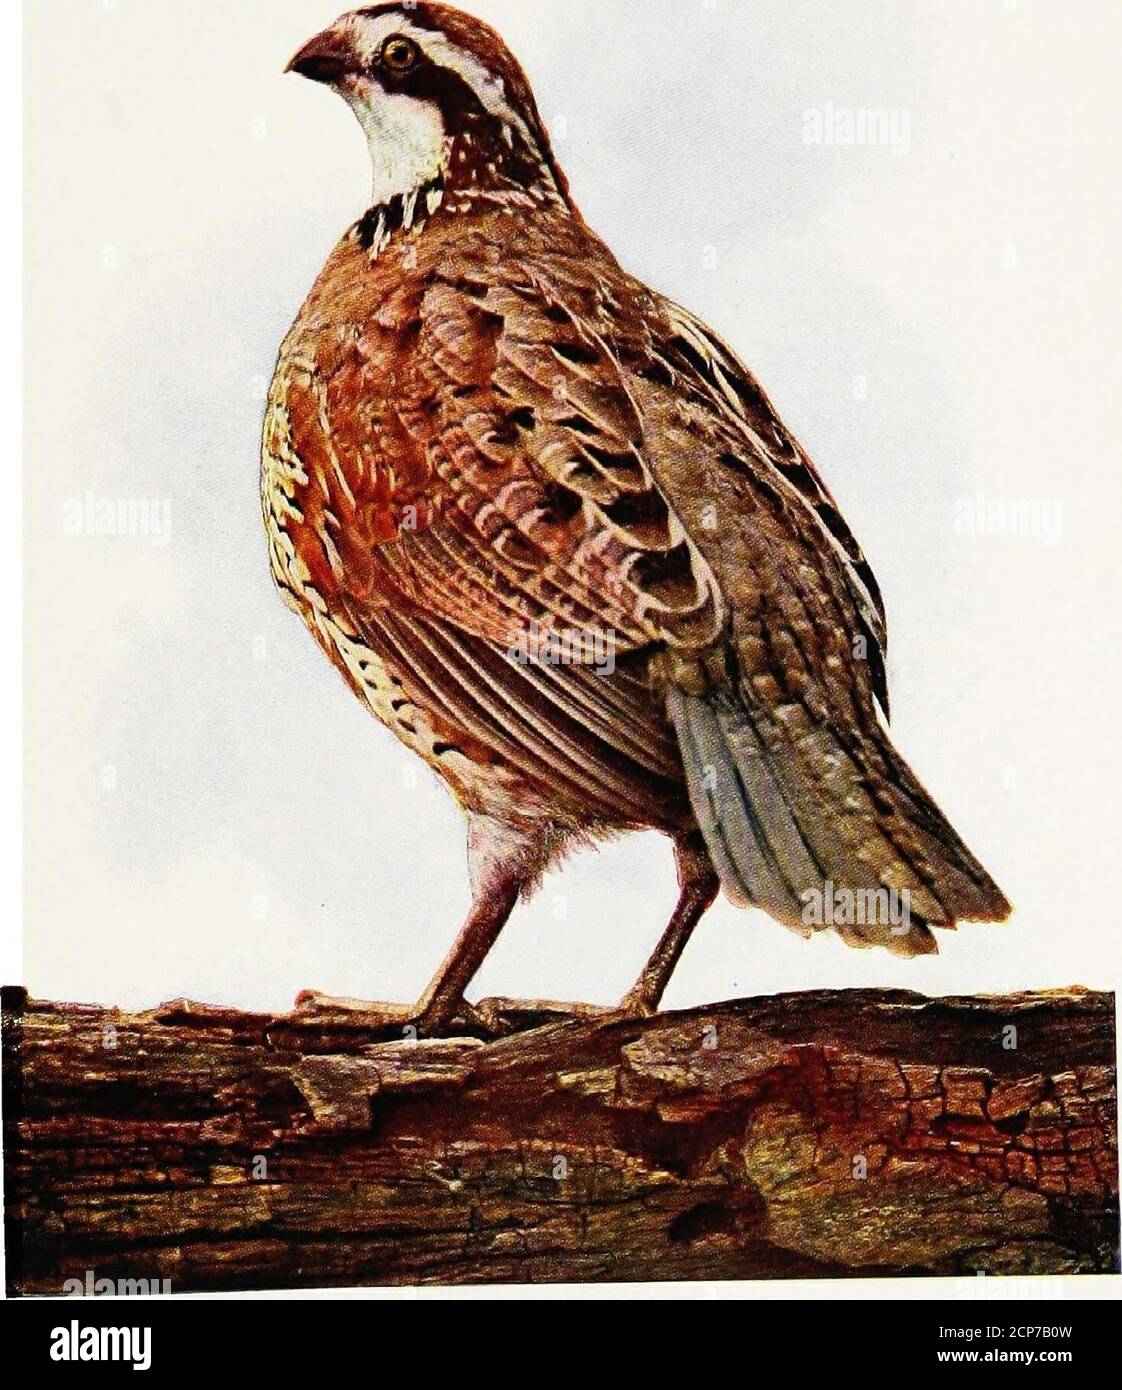 Historias de vida de aves, comp. De los escritos de Audubon, Bendire,  Nuttall, y Wilson. Esta especie realiza migraciones ocasionales desde el  este hasta el sureste, usualmente al principio de Octo-ber,